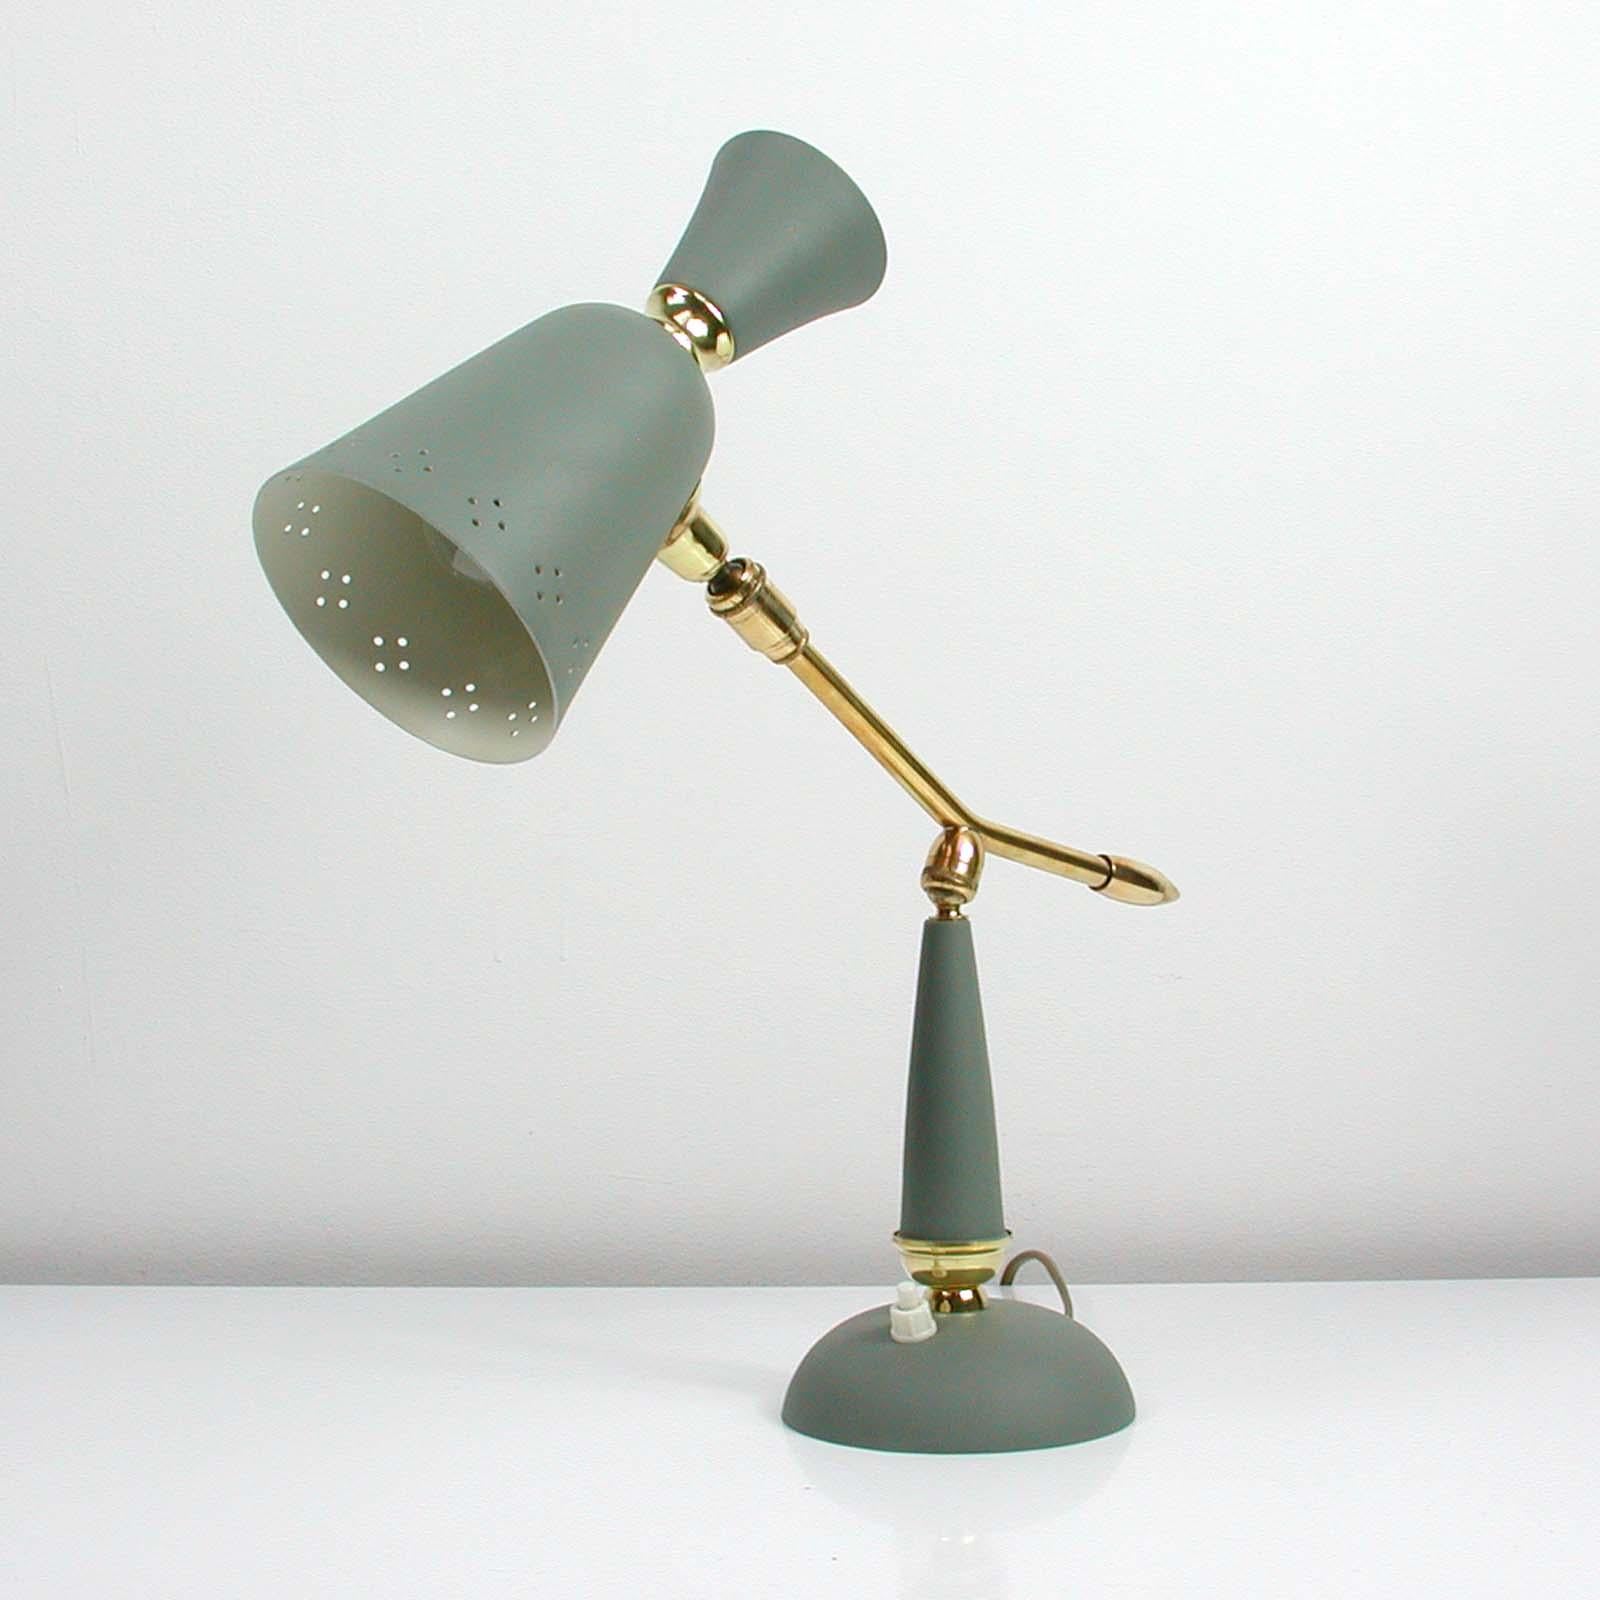 Cette lampe de table vintage du milieu du siècle a été fabriquée en France dans les années 1950. Elle est fabriquée en métal laqué gris et dispose d'un bras de lampe réglable en laiton et d'un abat-jour réglable.

La lampe a une douille E27. Il a